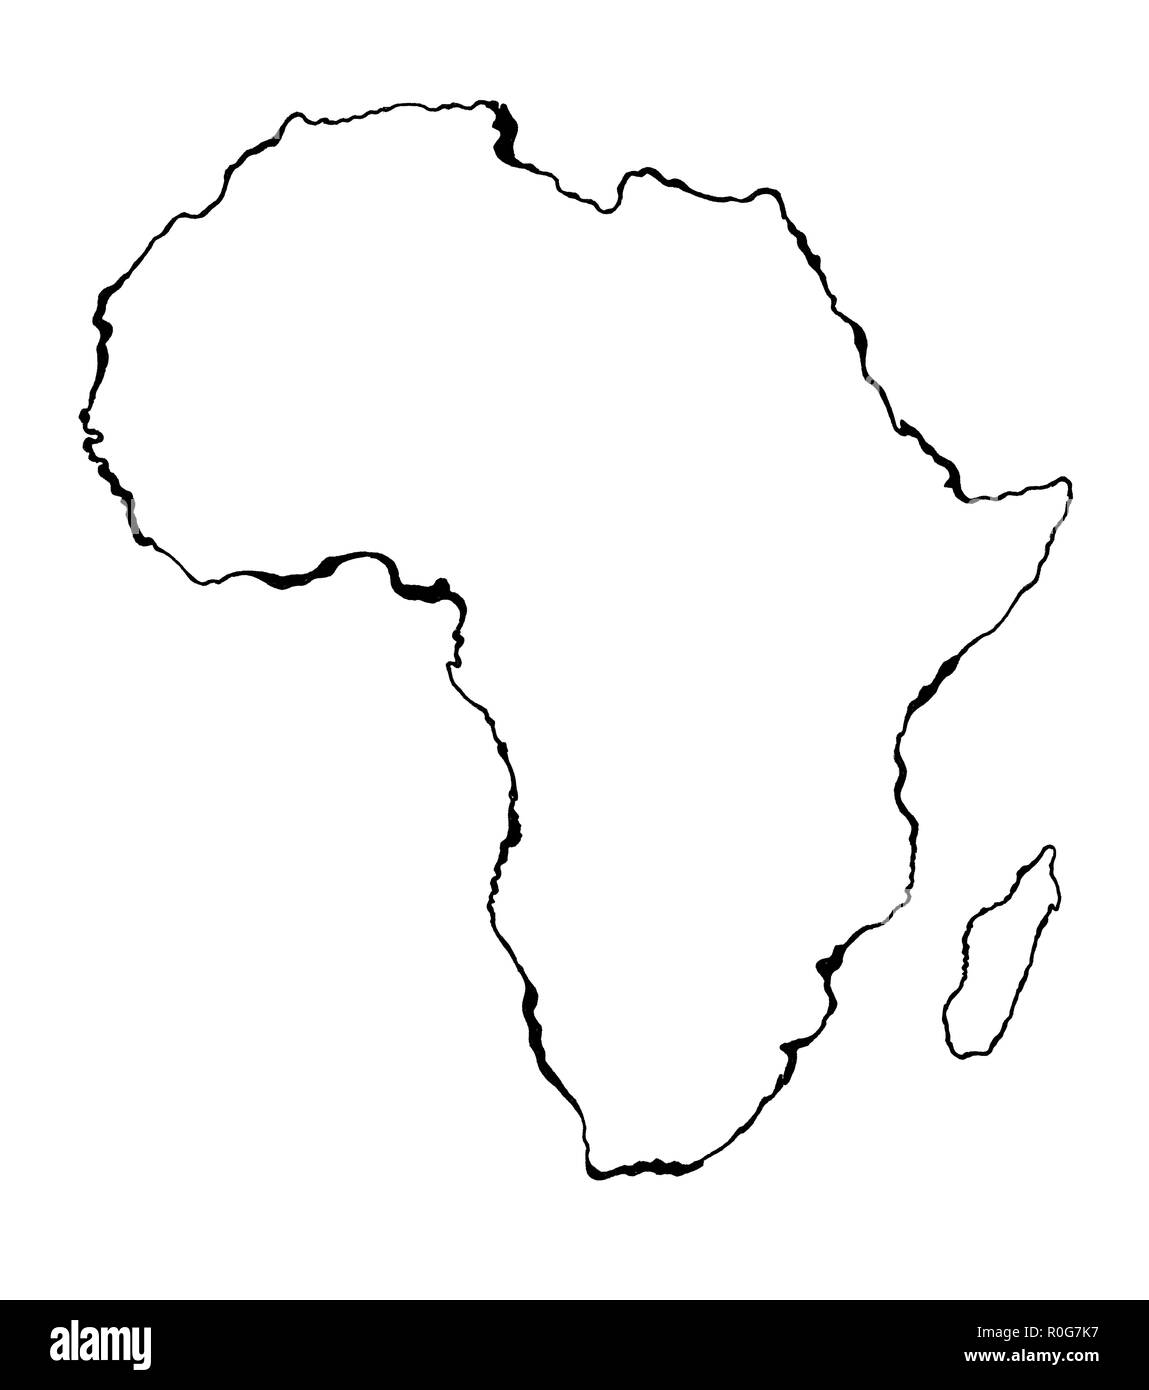 Disegnata a mano abbozzato Africa mappa (originali, senza tastatura) Foto Stock